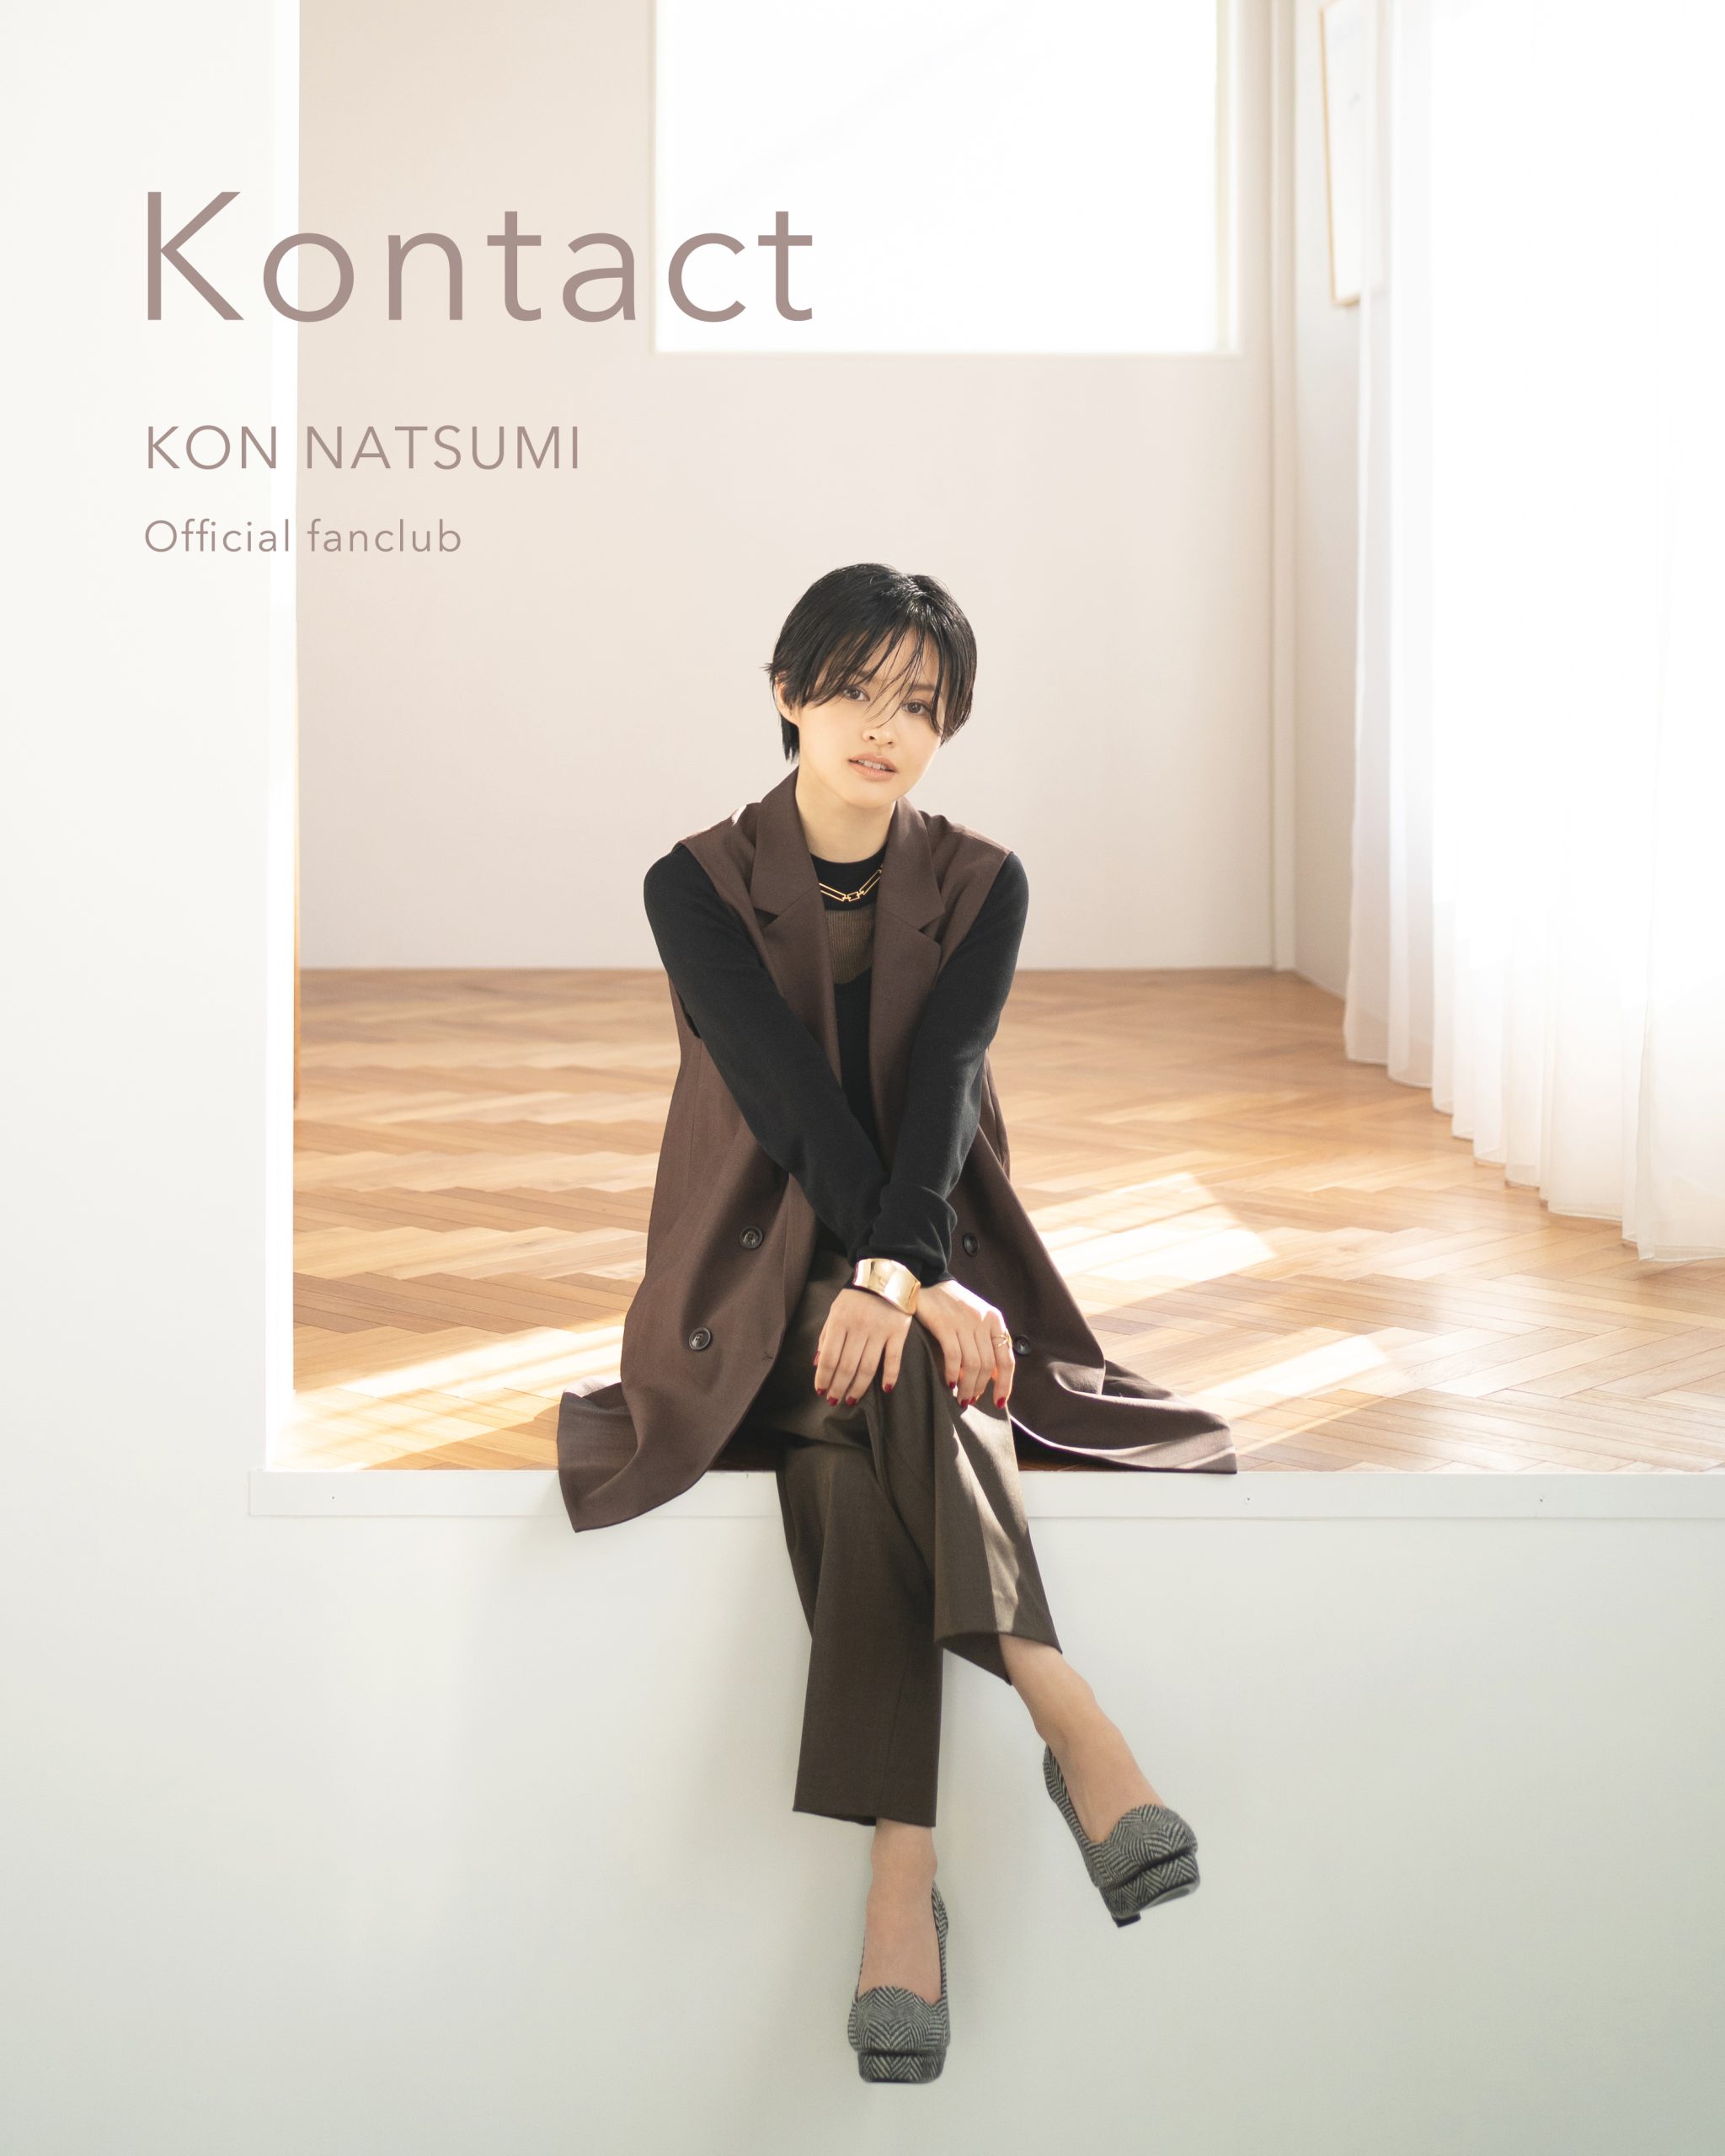 昆夏美 Official fanclub「Kontact」開設！